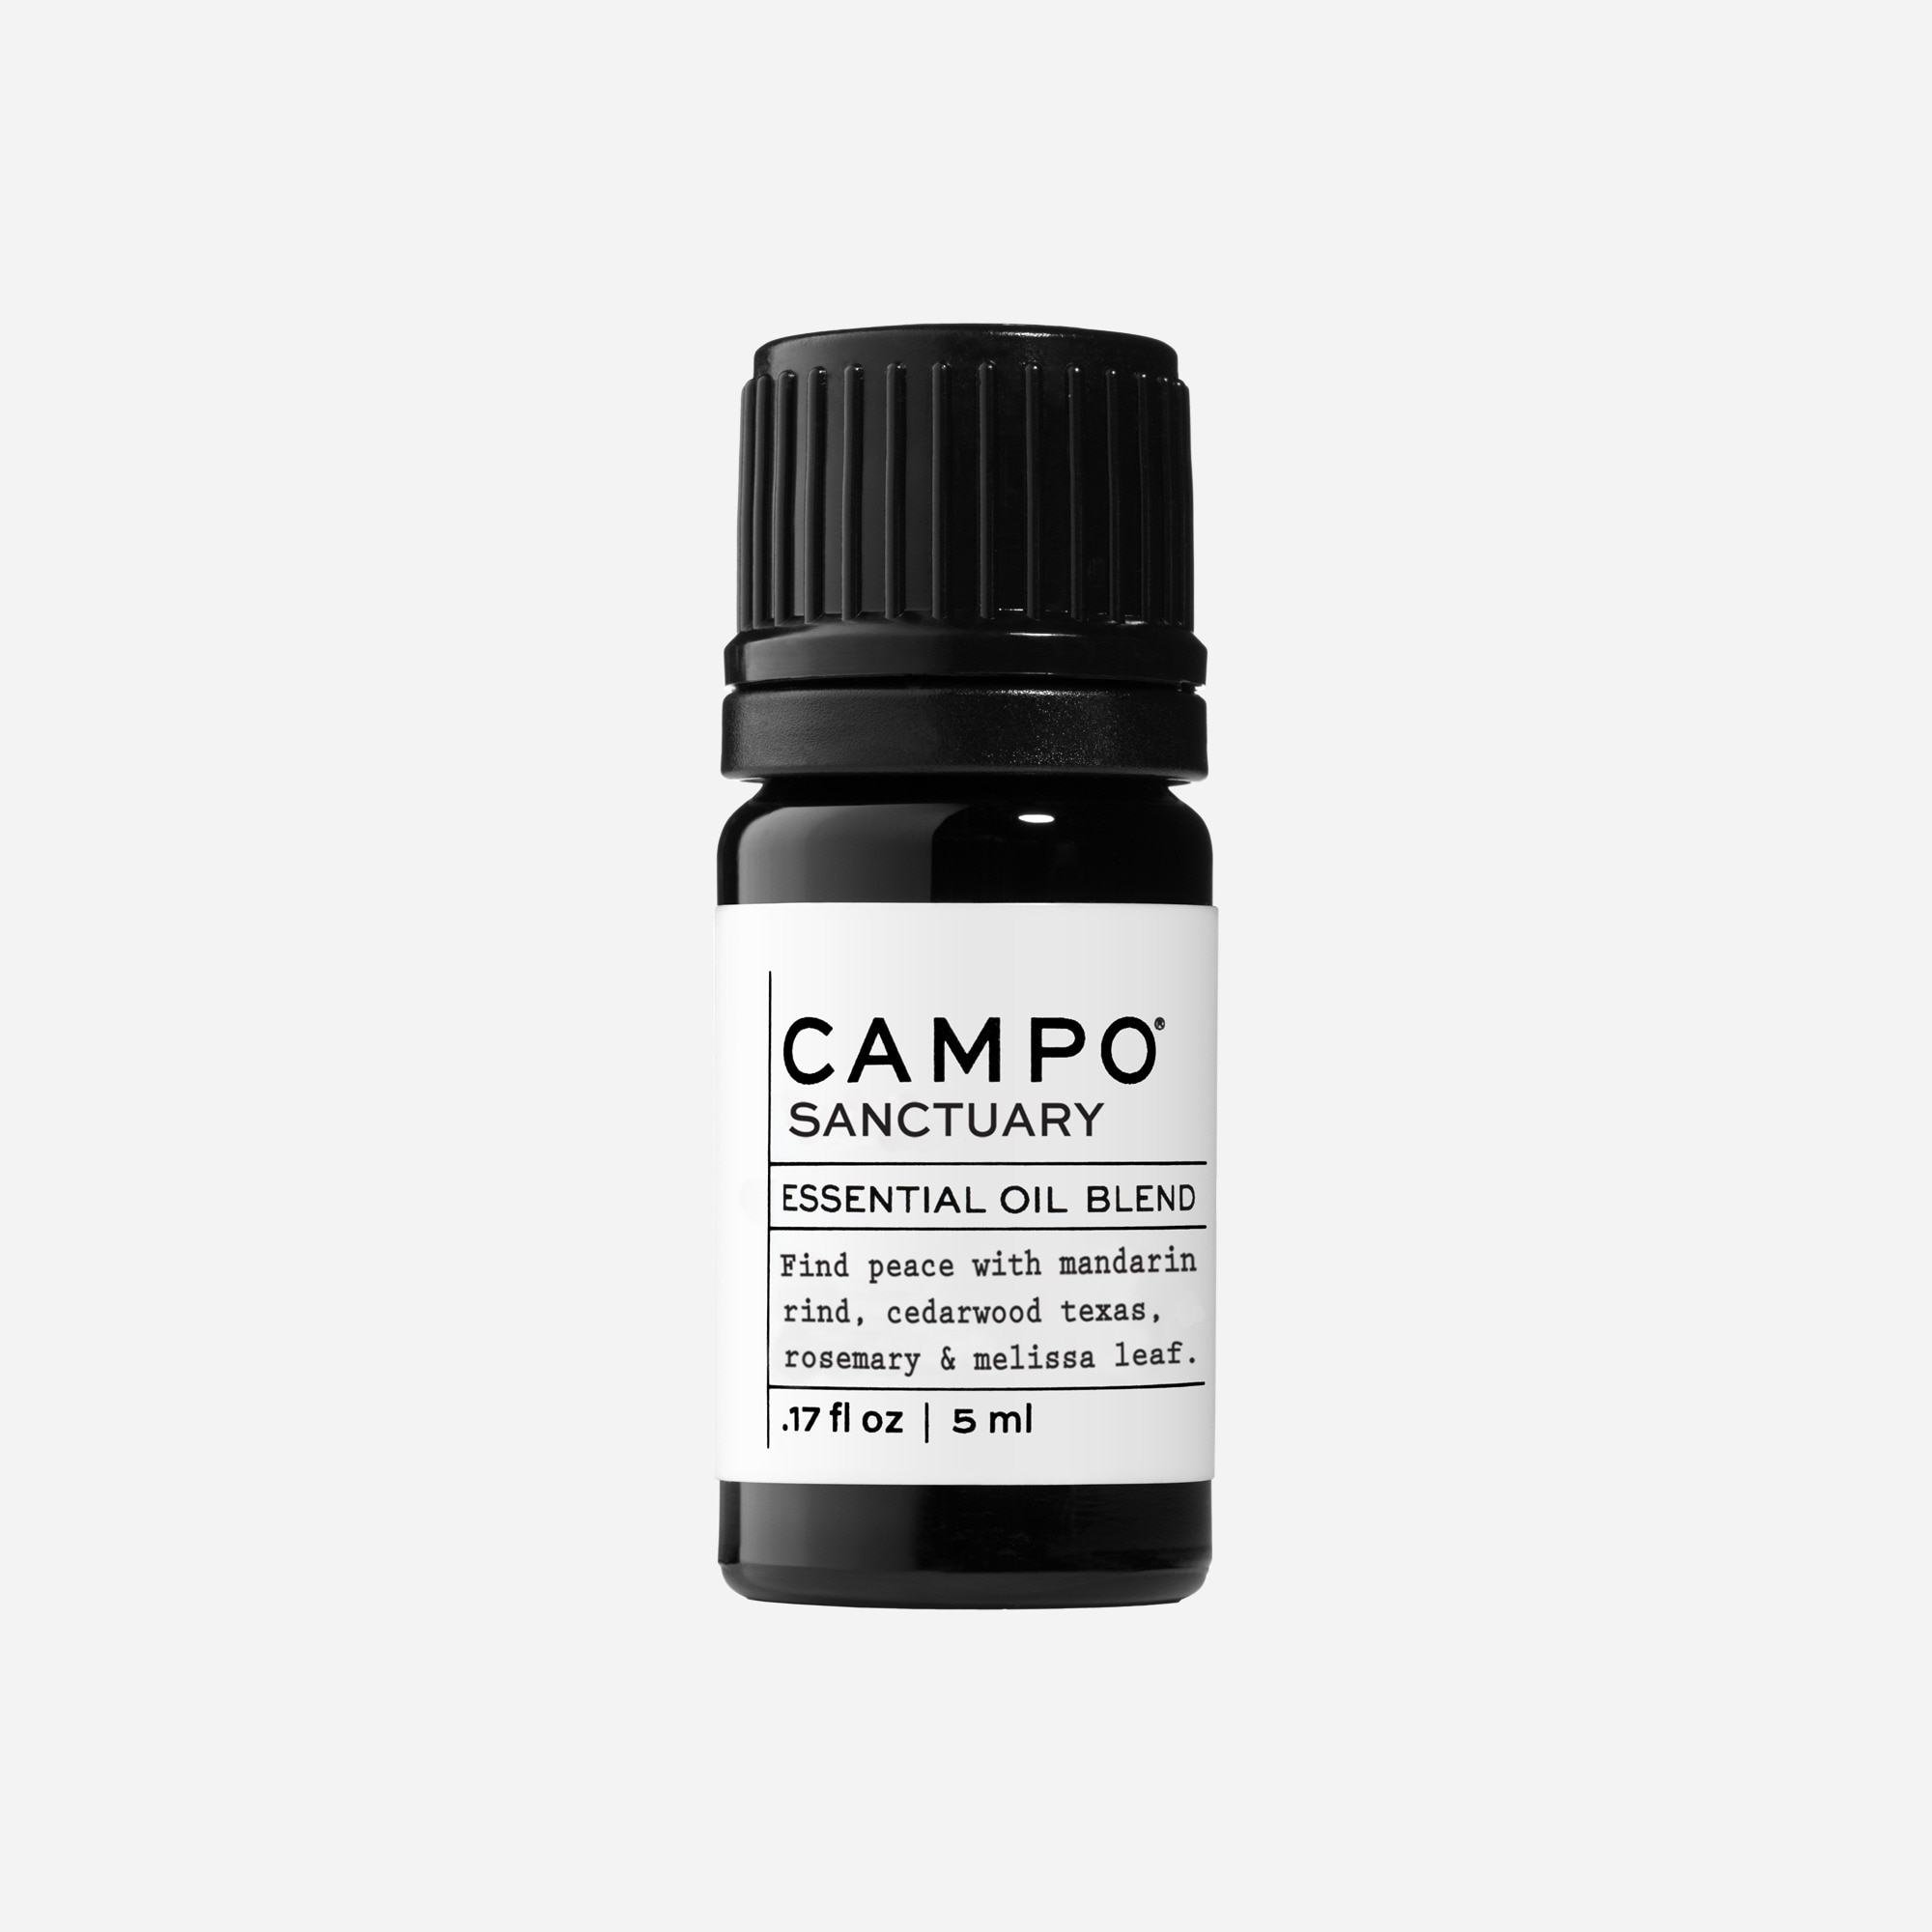 Jcrew CAMPO SANCTUARY blend essential oil